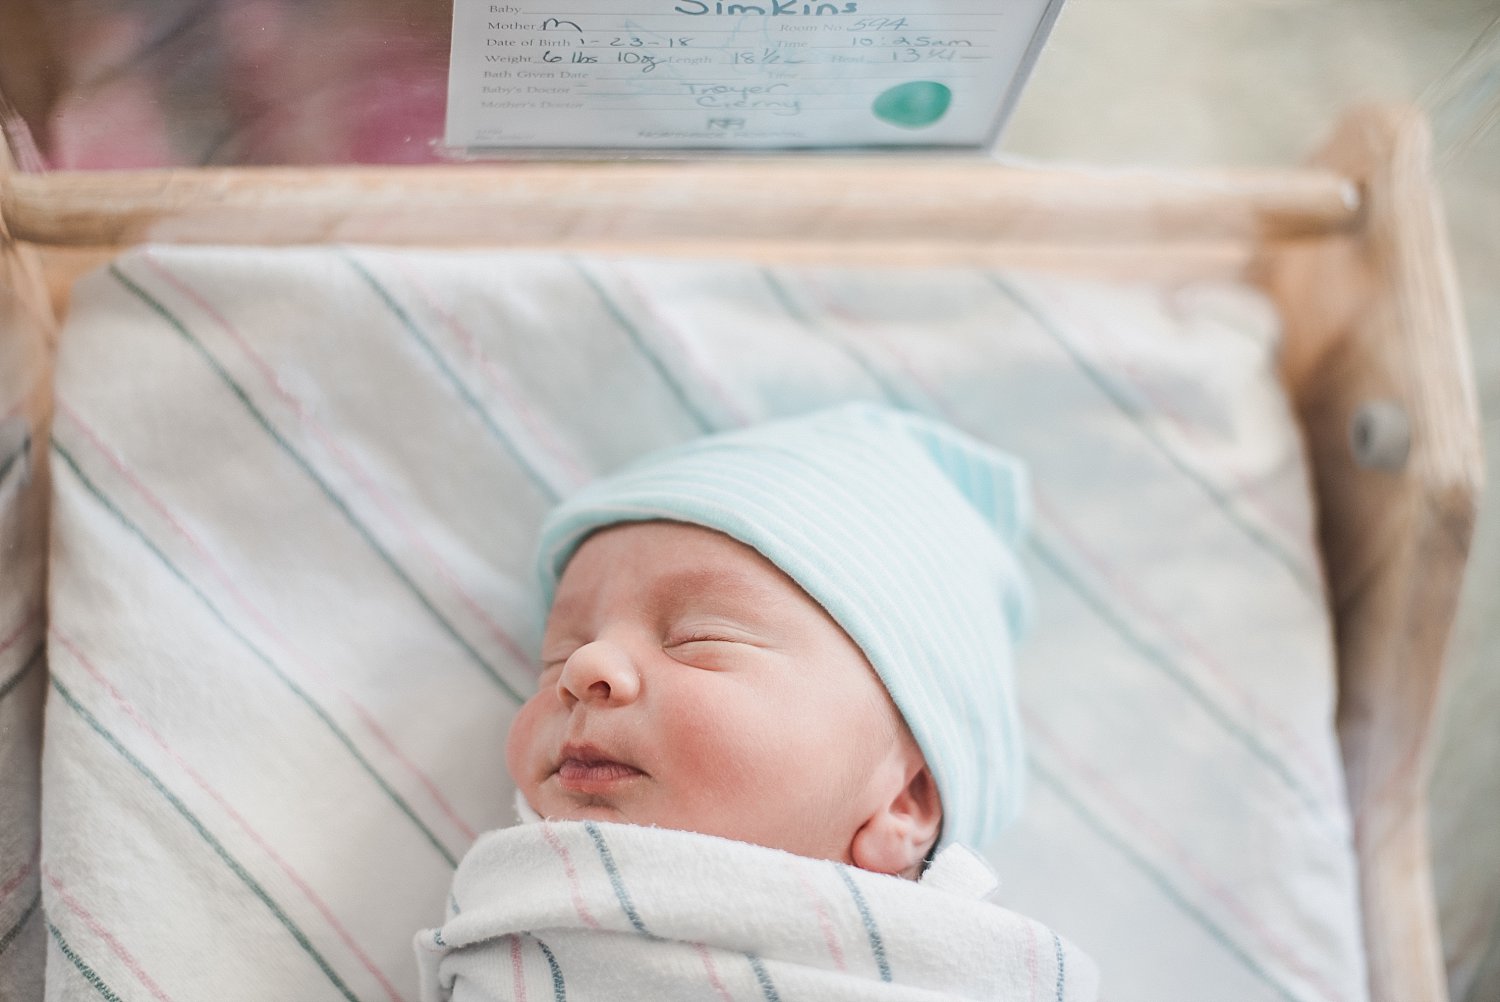 Newborn baby in Bassinet Northside Atlanta Hospital